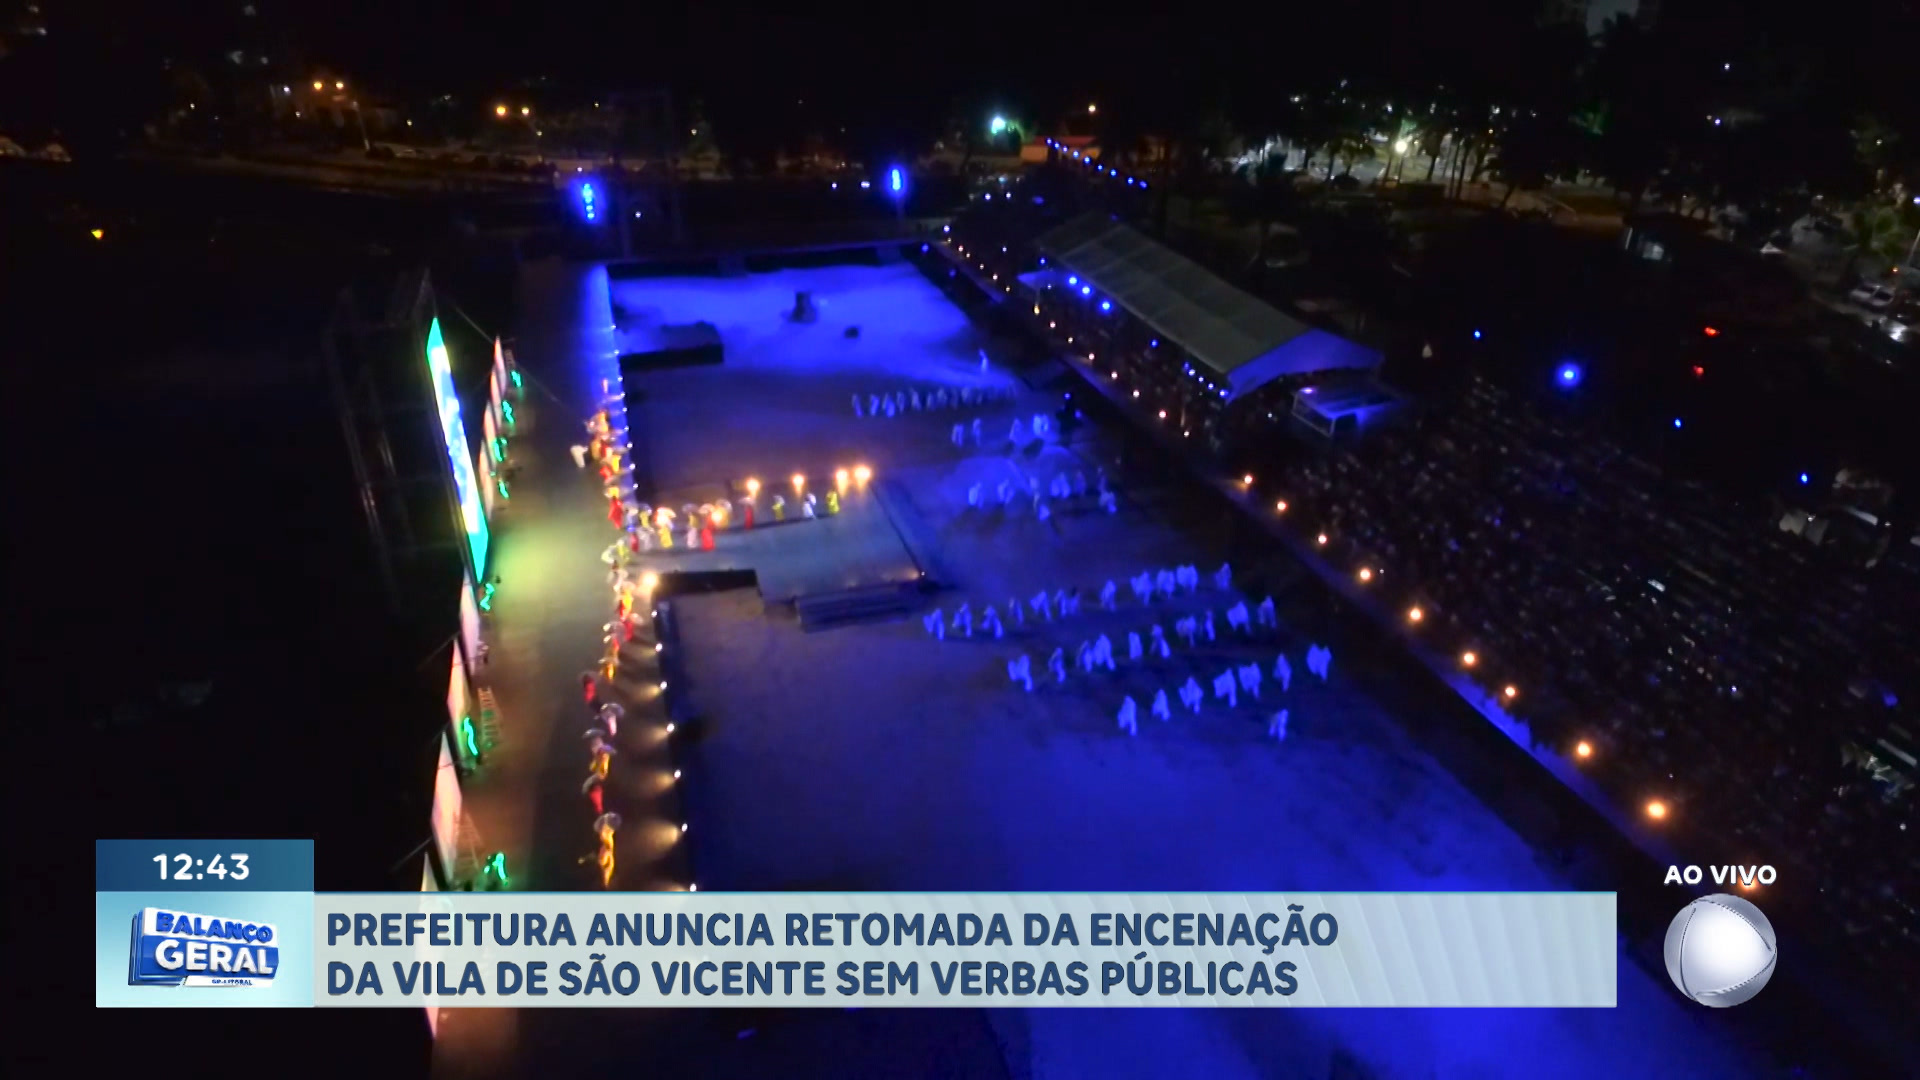 Vídeo: Prefeitura de São Vicente anuncia volta da Encenação